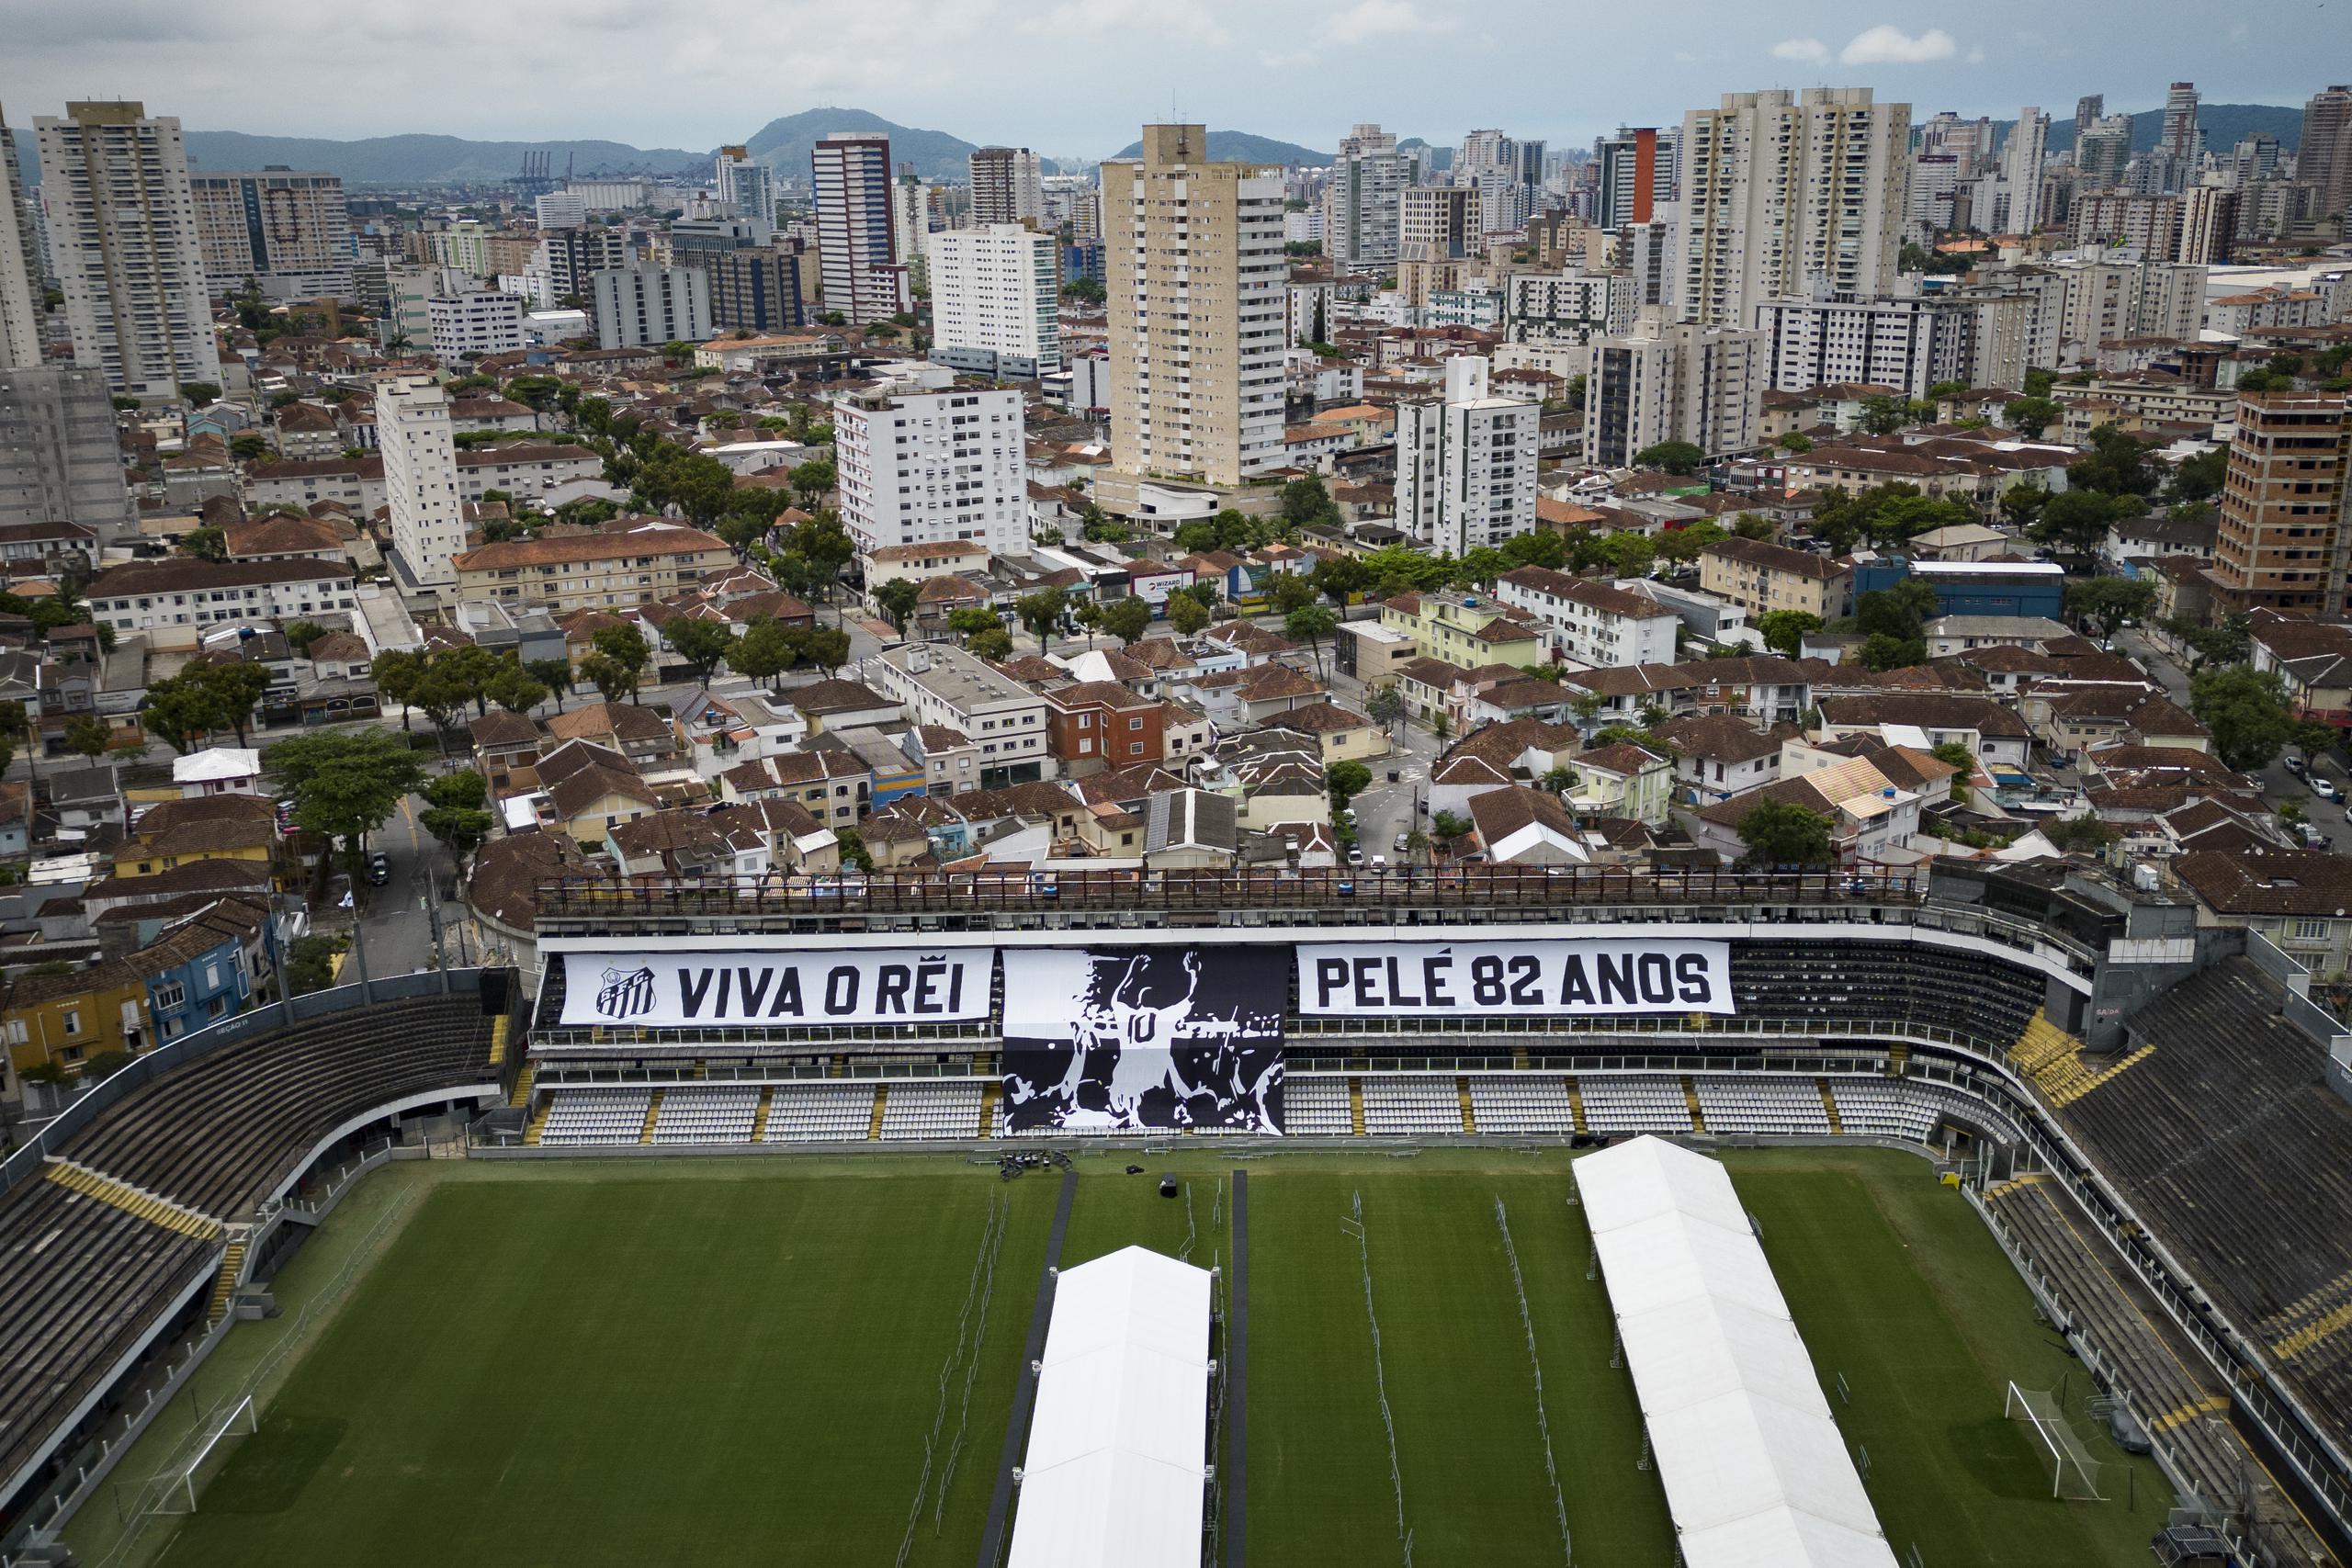 Esa es la pancarta que ha sido desplegada para el velatorio de Pelé en el estadio del club Santos, para el cual jugó la gran parte de su carrera.